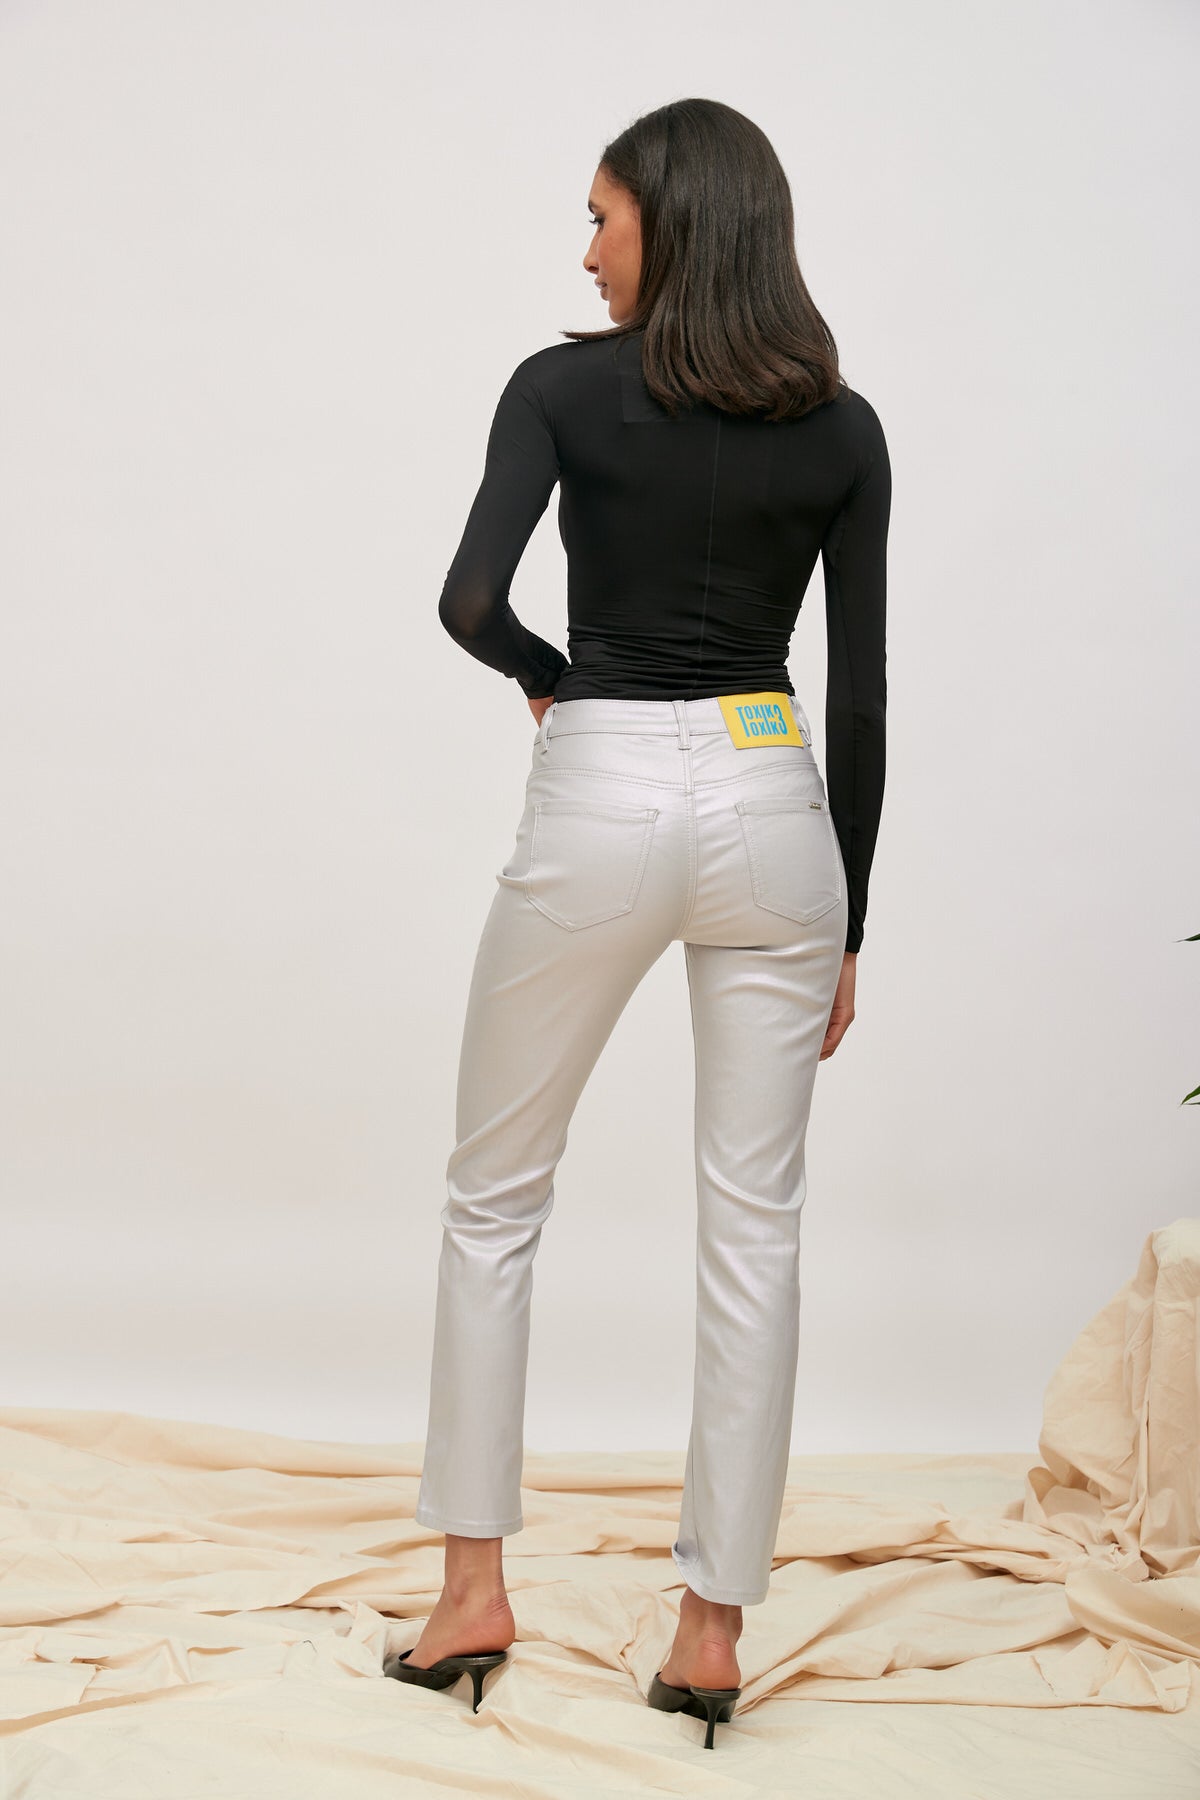 Pure Glow - pantalones de recubrimiento brillantes